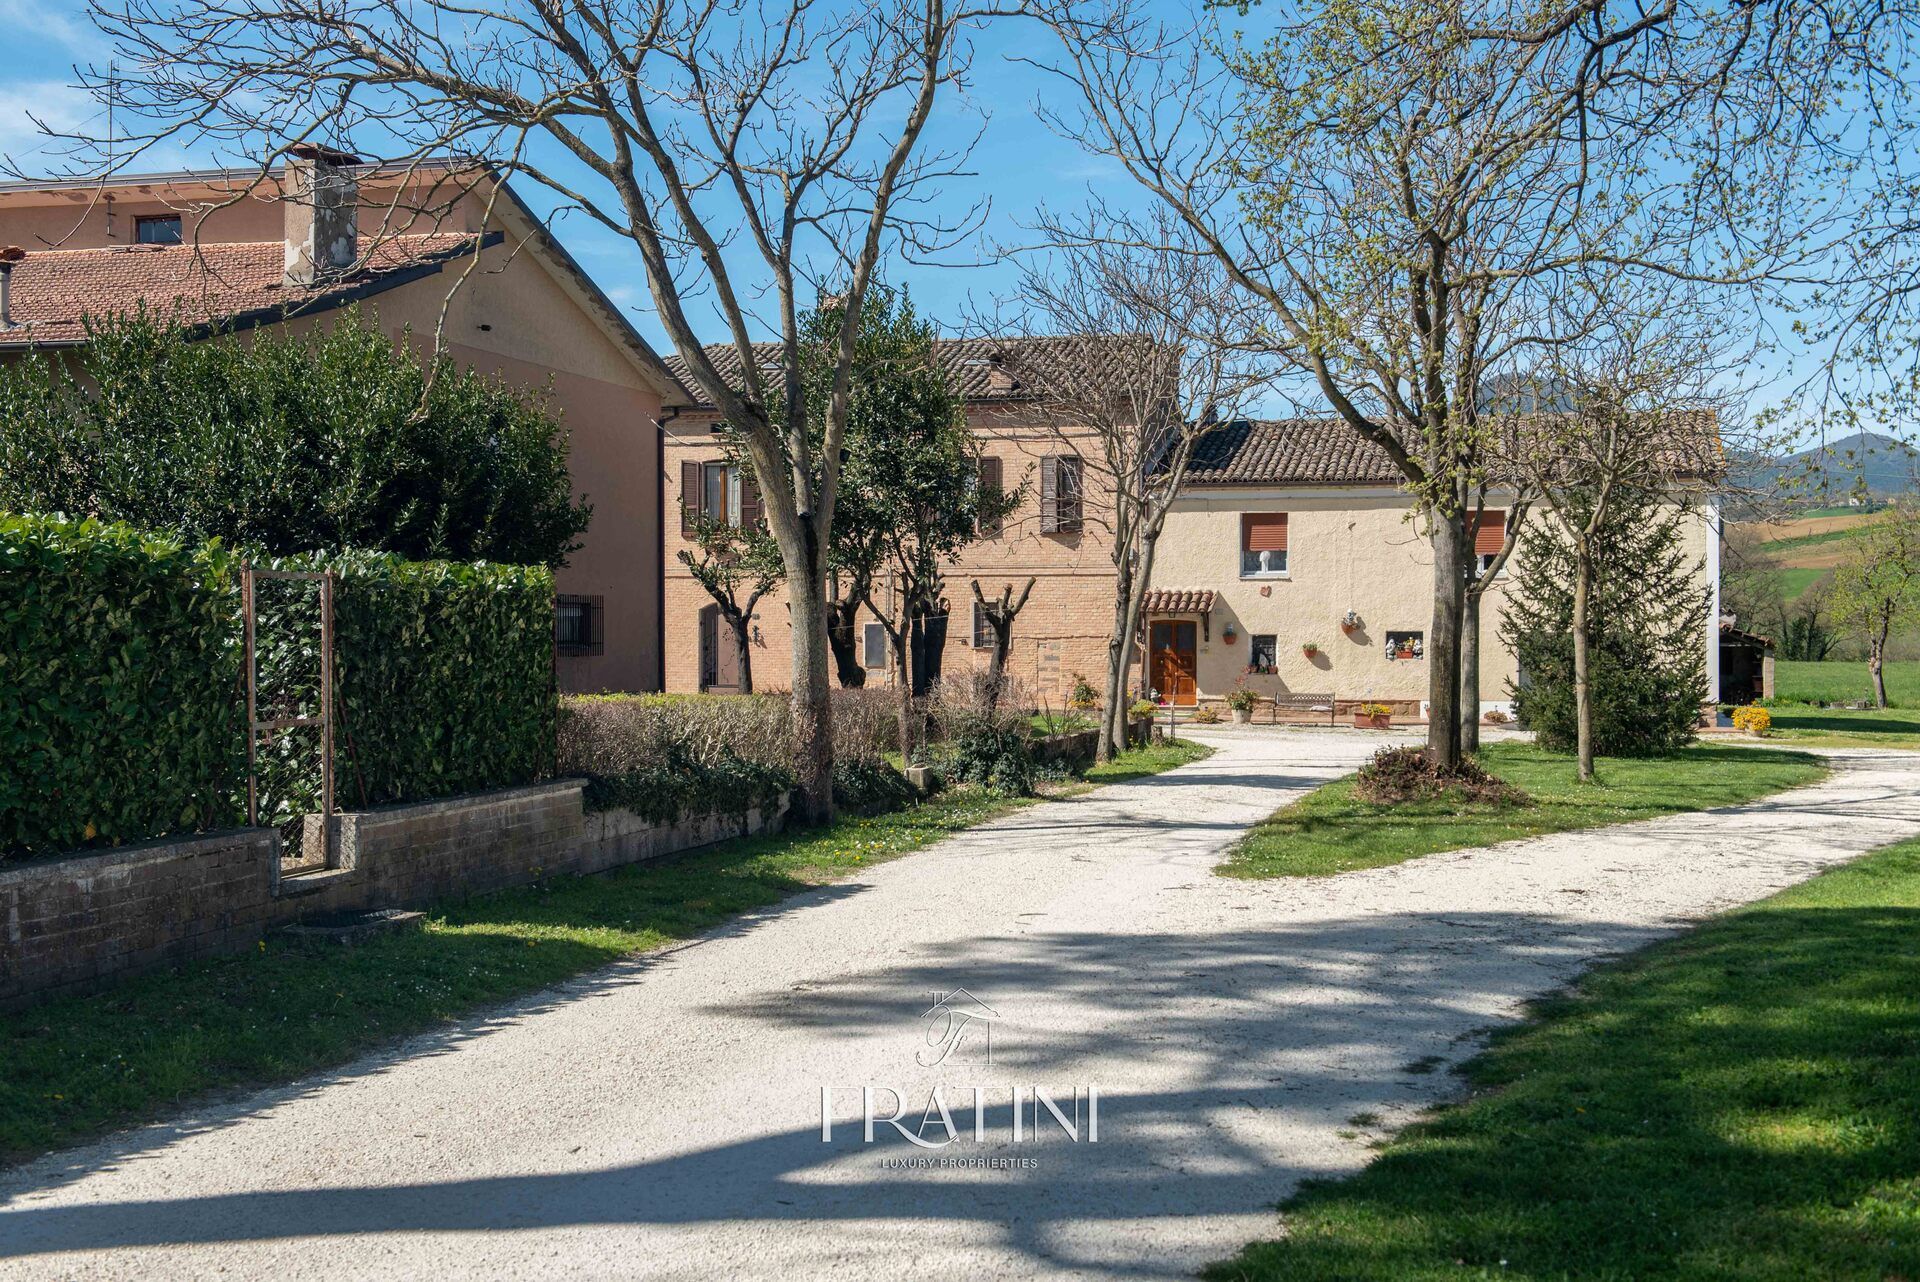 For sale cottage in quiet zone Matelica Marche